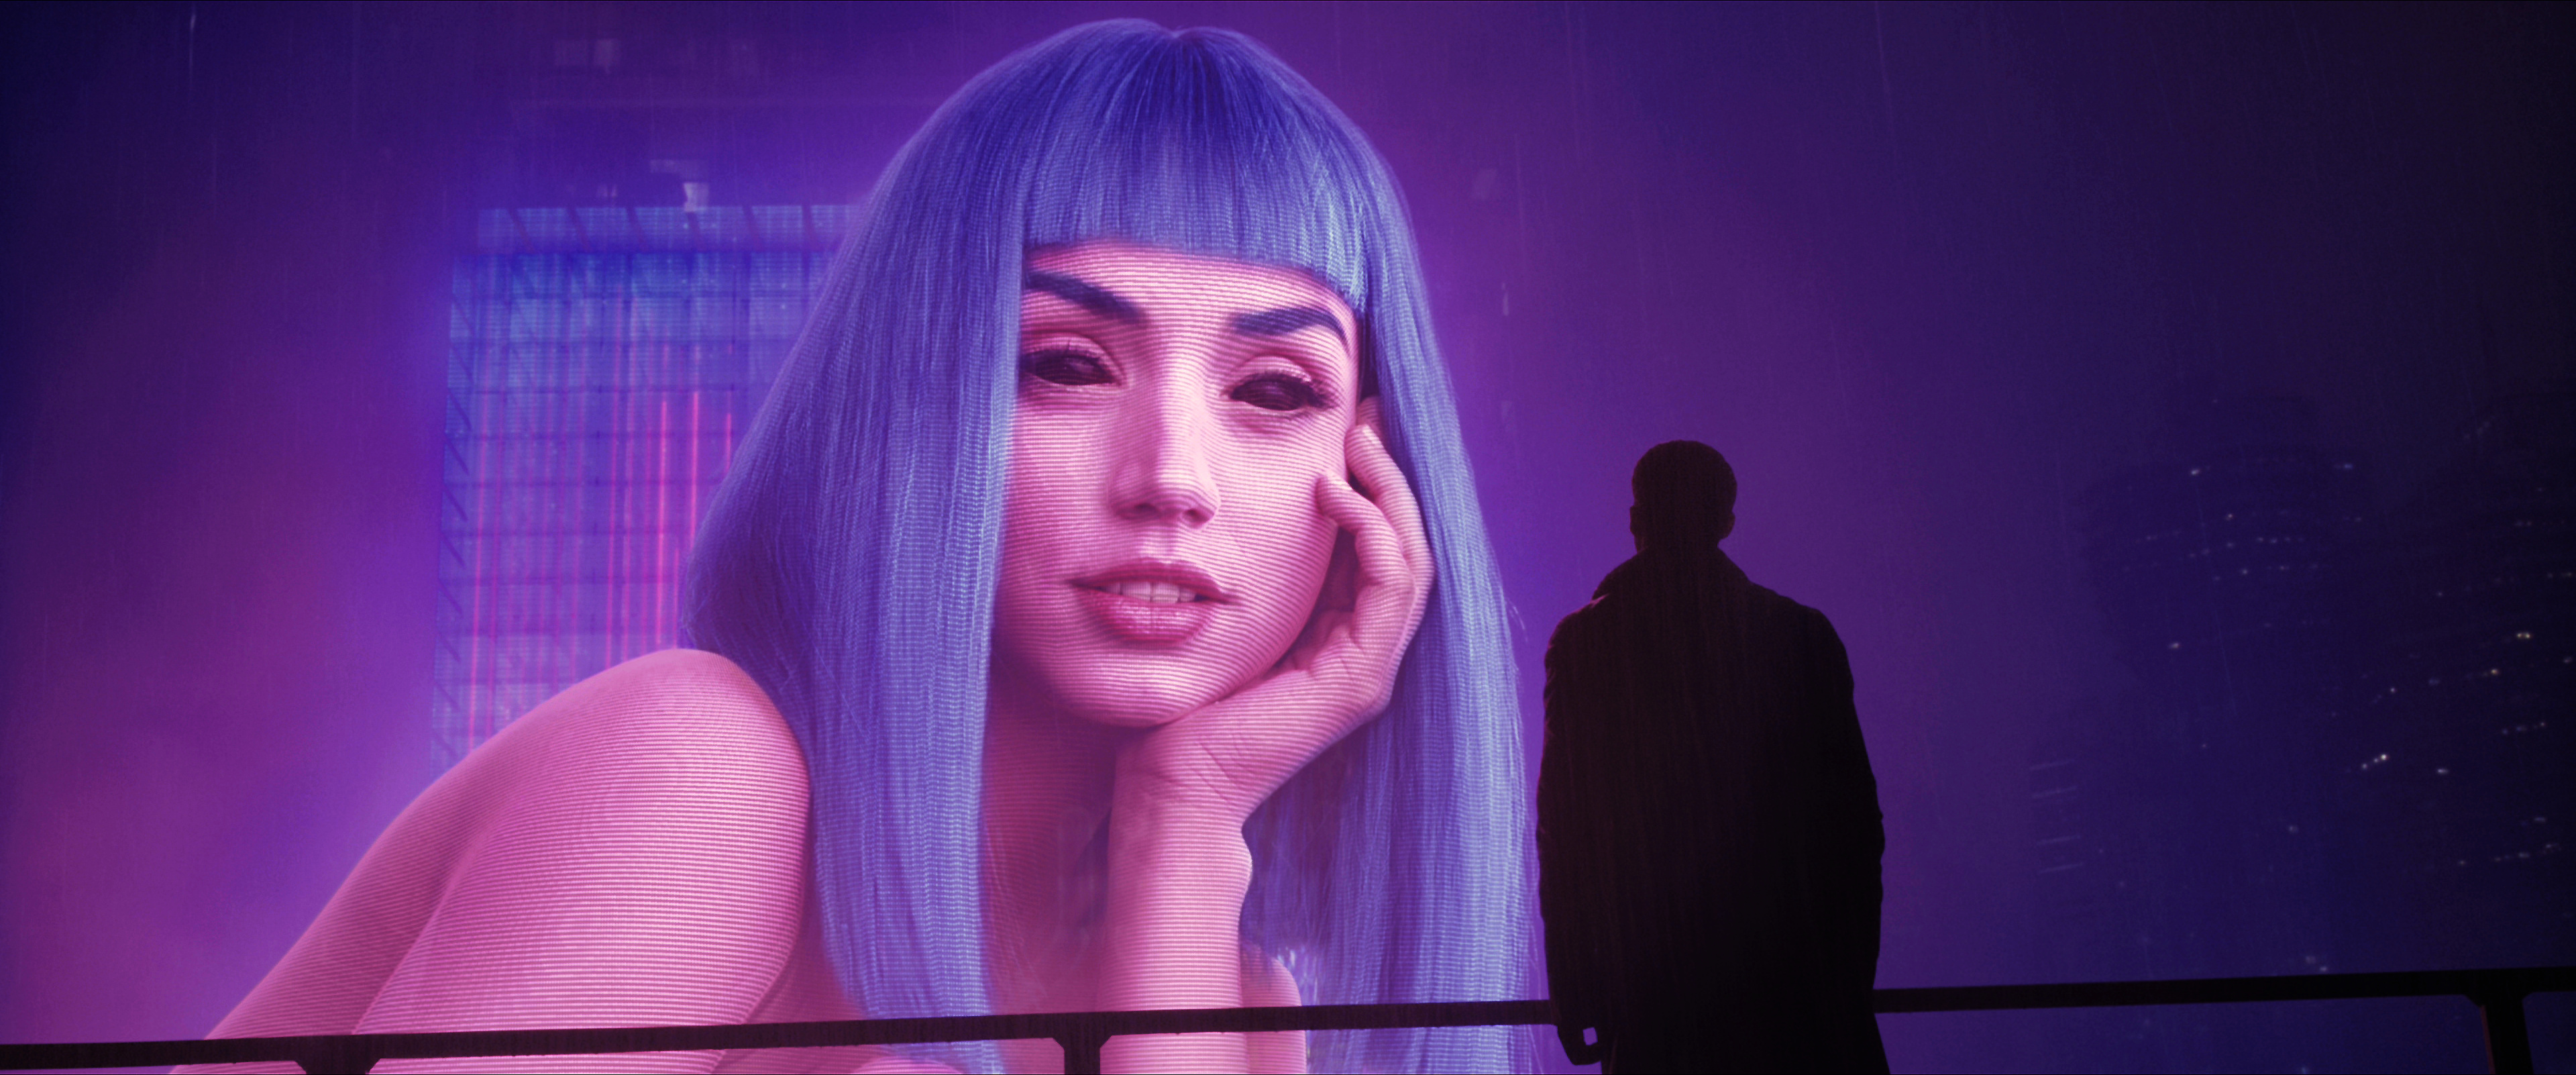 Blade Runner 2049 cyberpunk movie, Ana de Armas, Ryan Gosling, Stunning wallpaper resolution, 3840x1610 Dual Screen Desktop